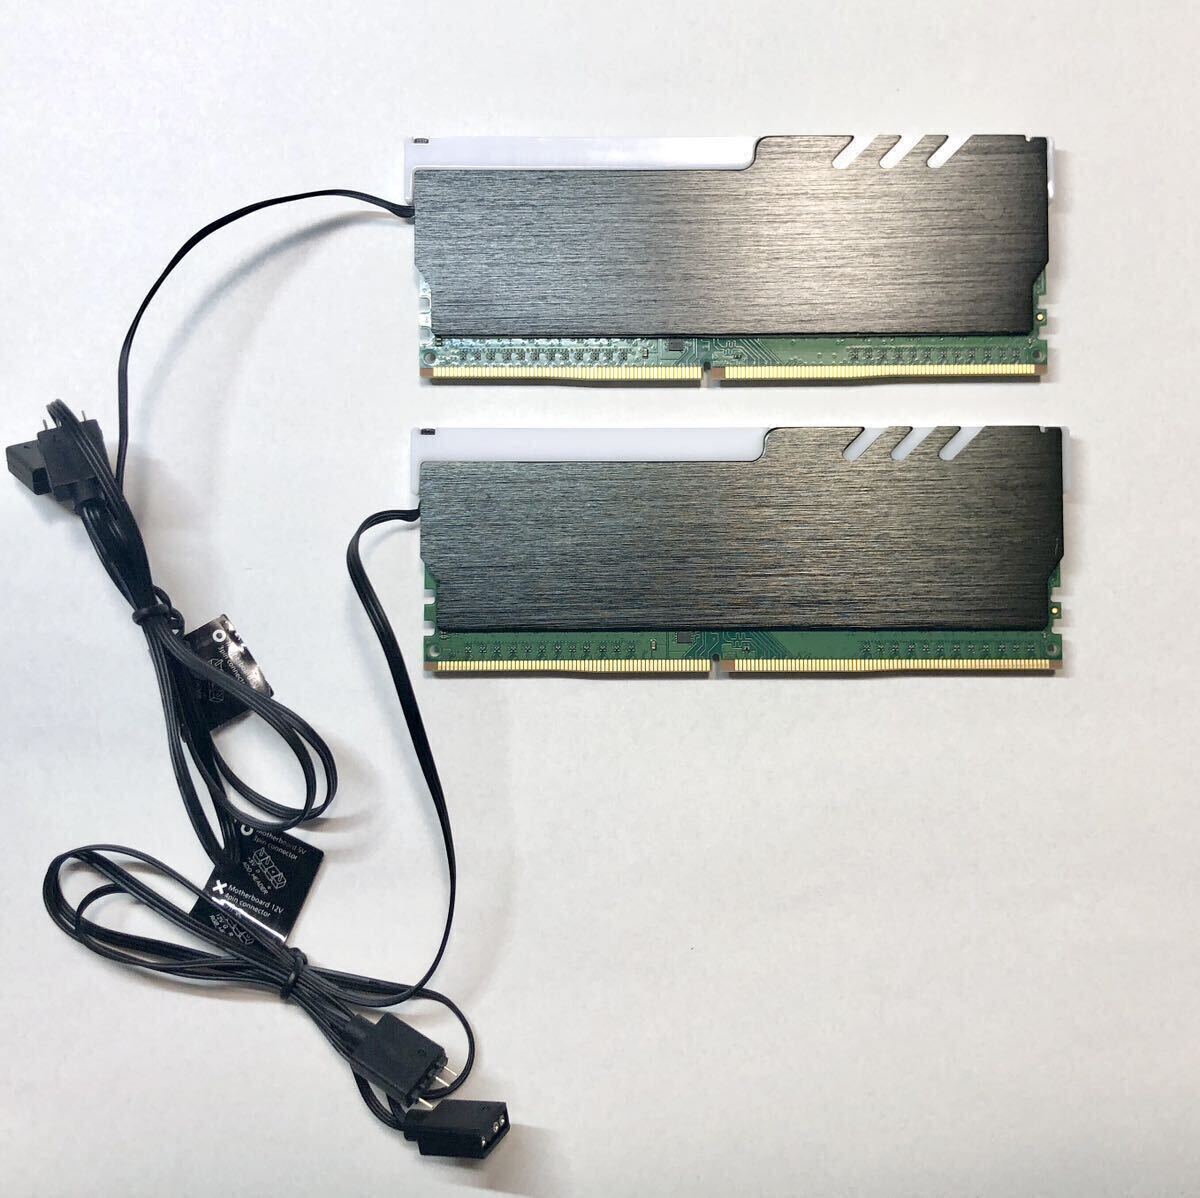 [ б/у ]Crucial настольный память DDR4 3200MHz (8GB 2 листов комплект итого 16GB) + EZDIY-FAB RAM охлаждающий ARGB память теплоотвод 